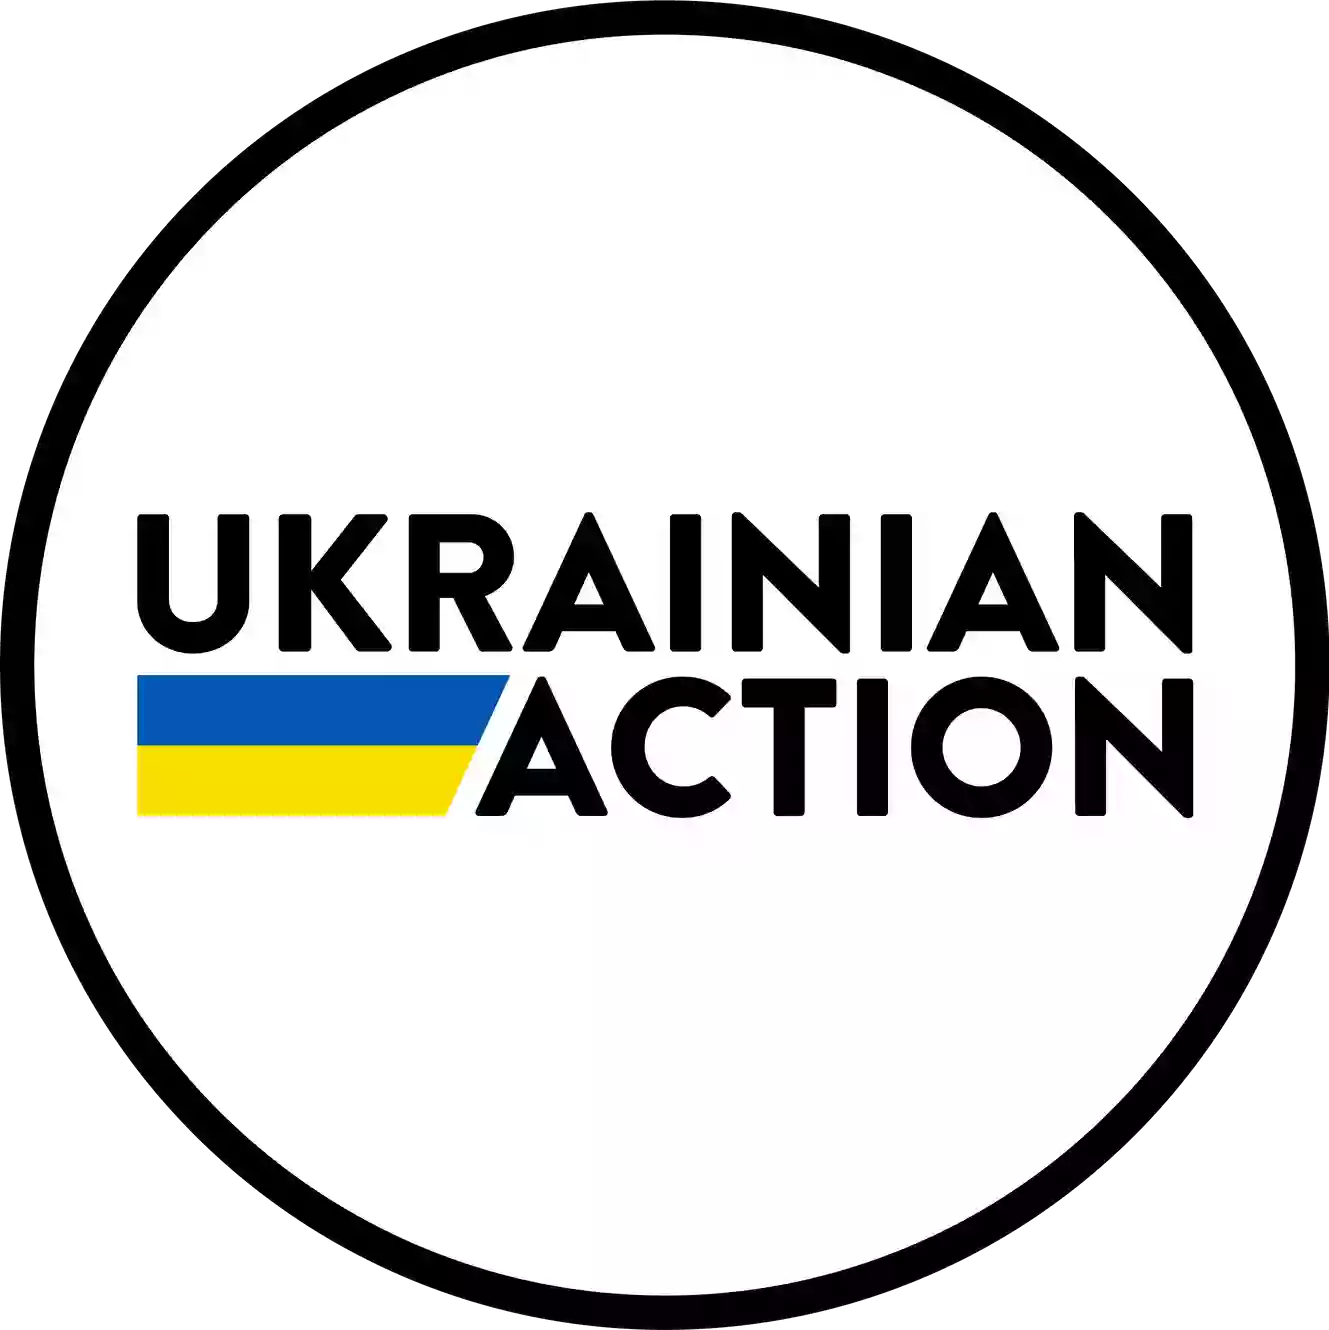 Ukrainian action